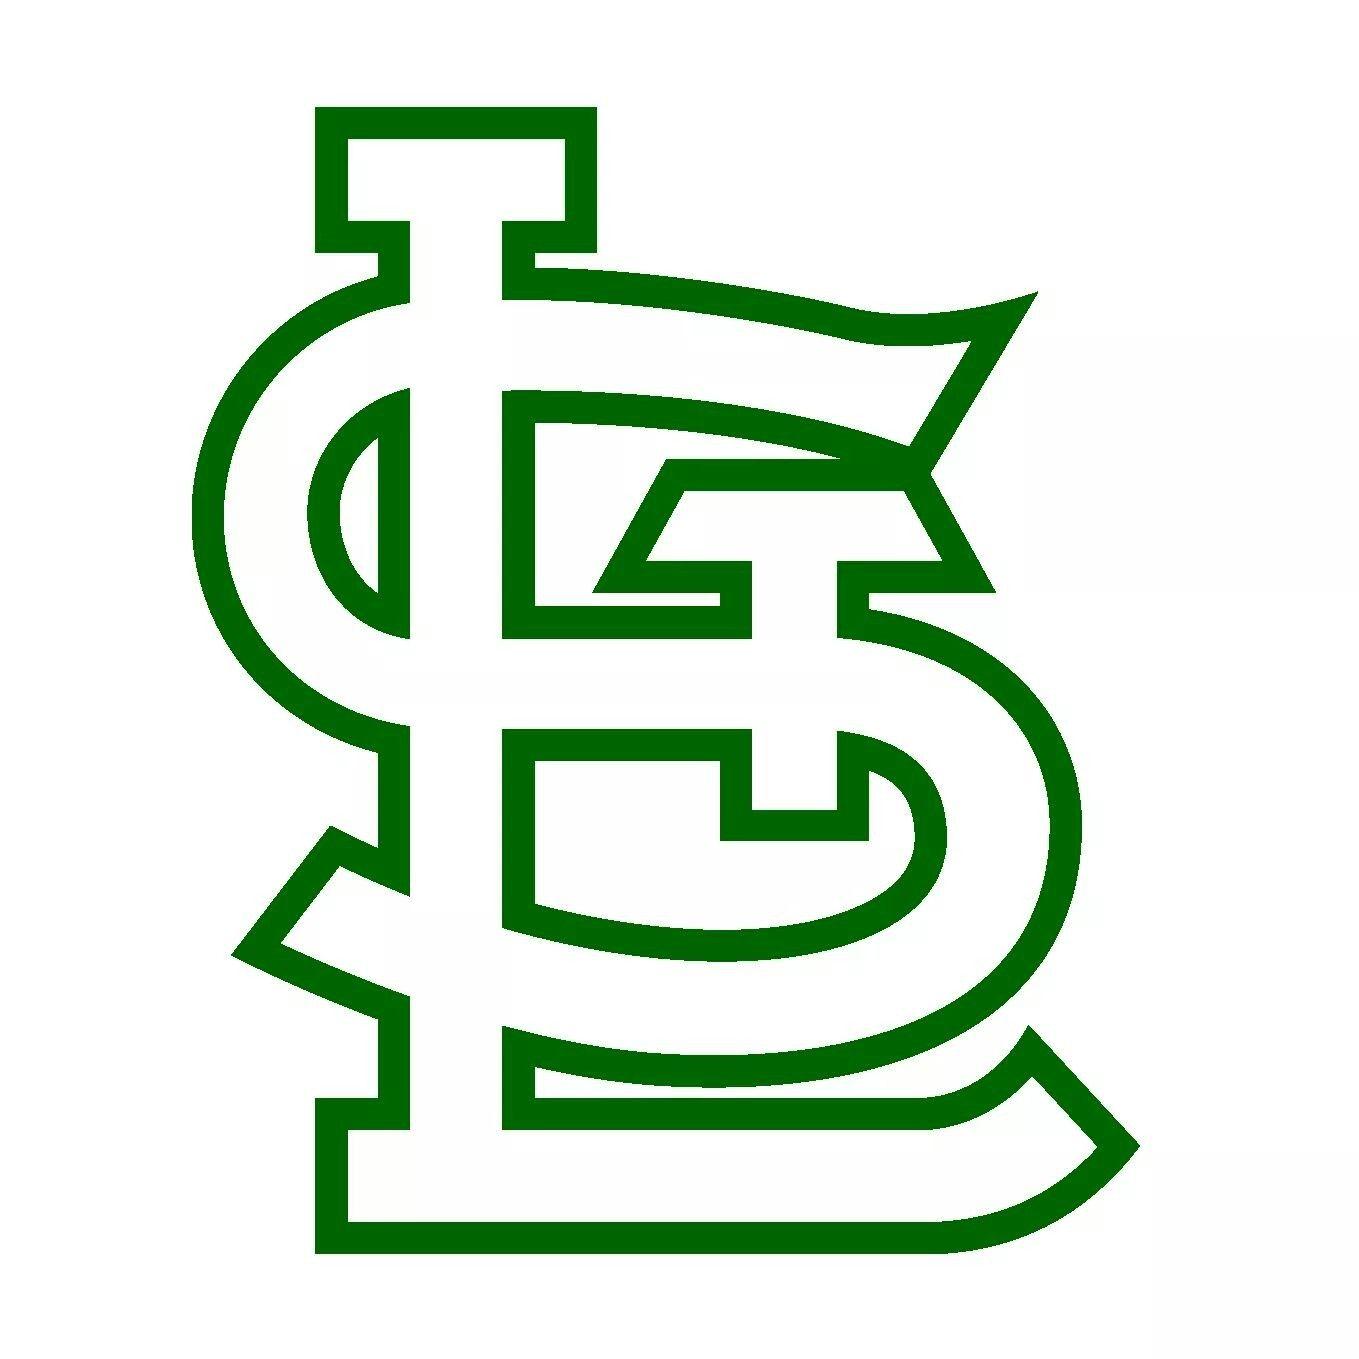 STL Logo - Cardinals baseball. St louis cardinals